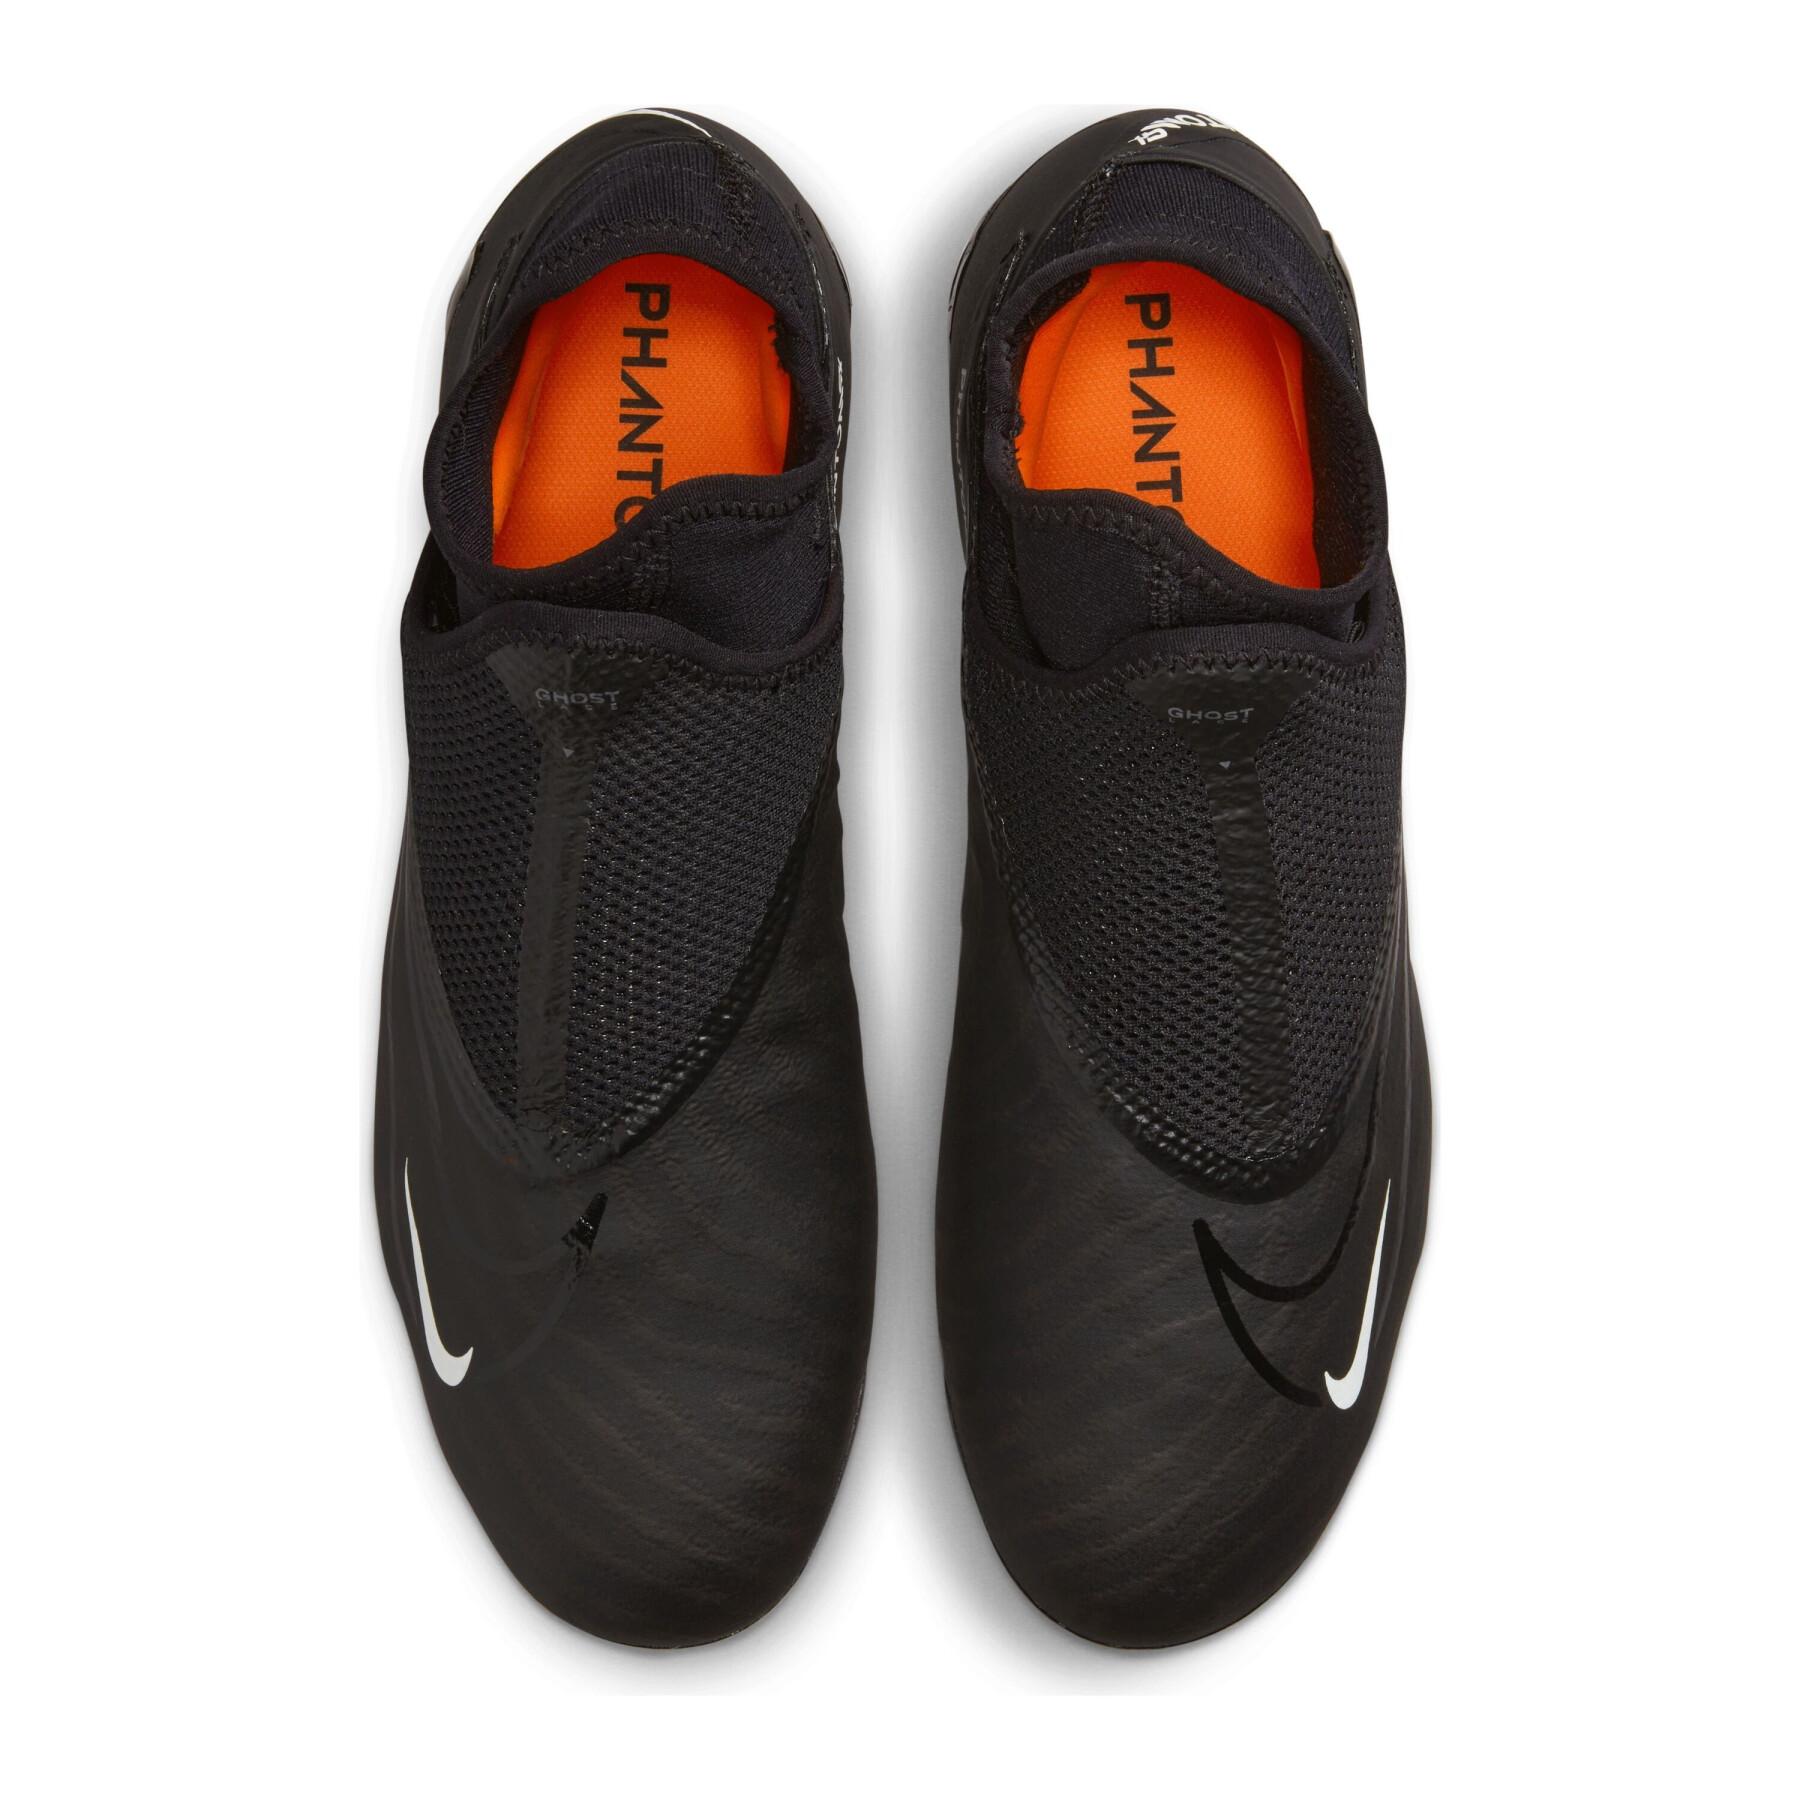 Botas de fútbol Nike Phantom GX Pro Dynamic Fit FG - Black Pack